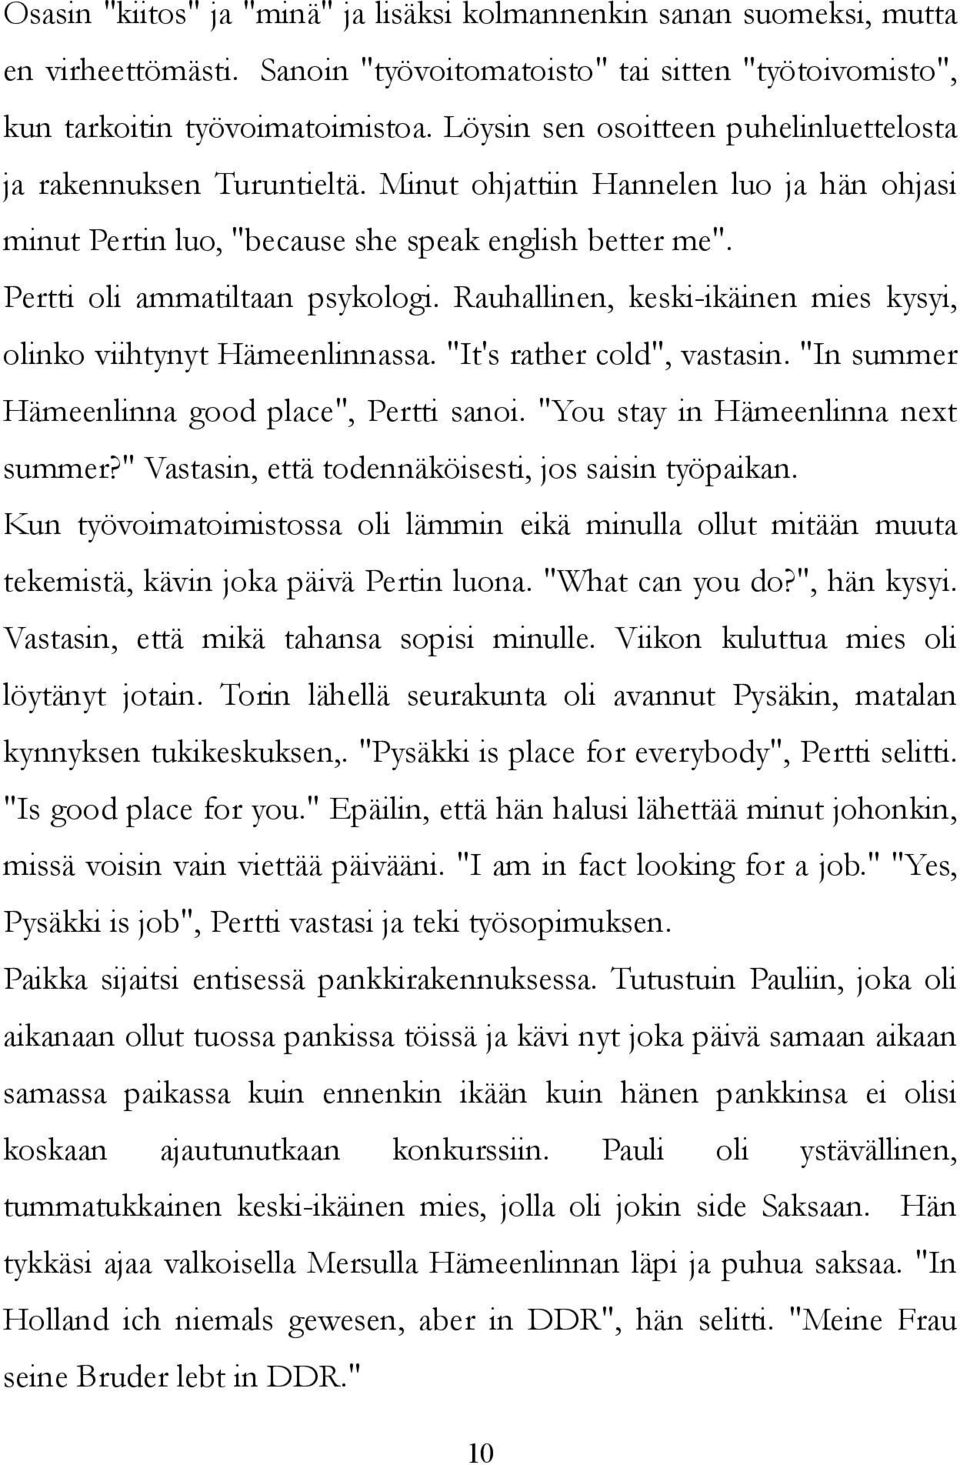 Pertti oli ammatiltaan psykologi. Rauhallinen, keski-ikäinen mies kysyi, olinko viihtynyt Hämeenlinnassa. "It's rather cold", vastasin. "In summer Hämeenlinna good place", Pertti sanoi.